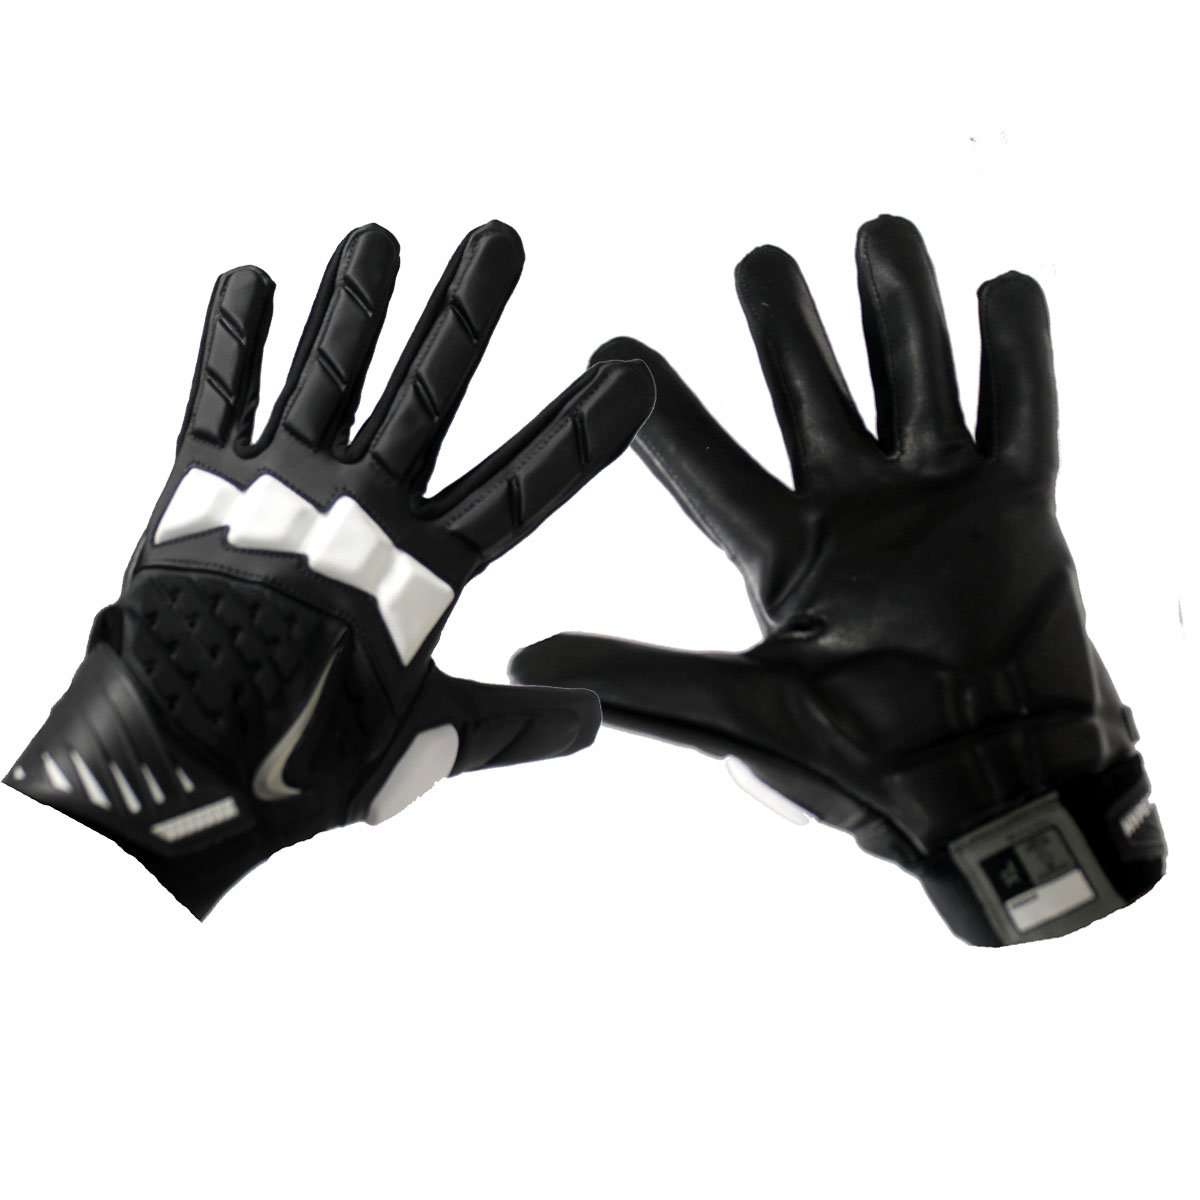 hyperbeast gloves